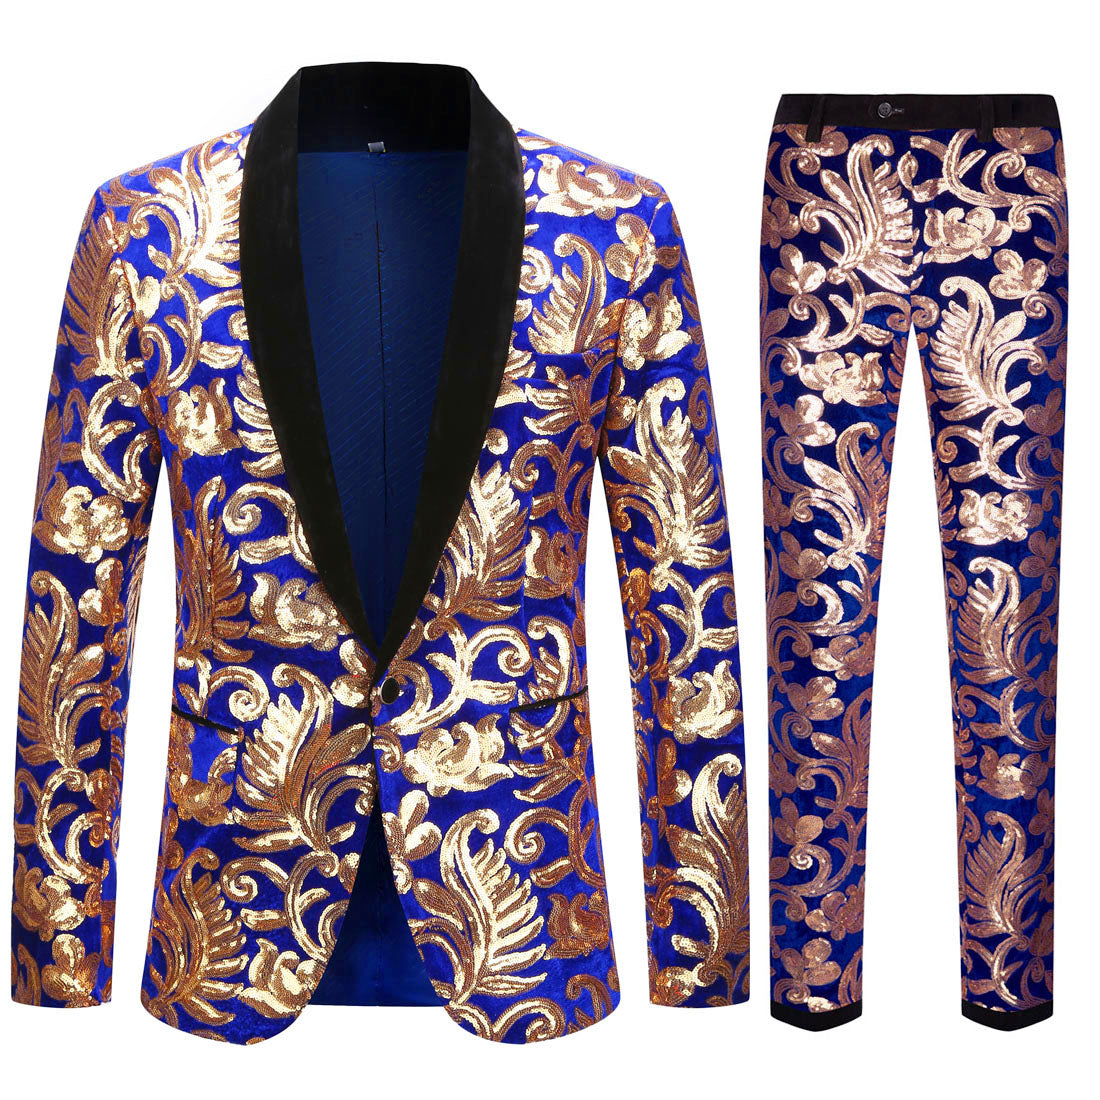 Lustrous Velvet Sequin Patterns Suit S8055-7